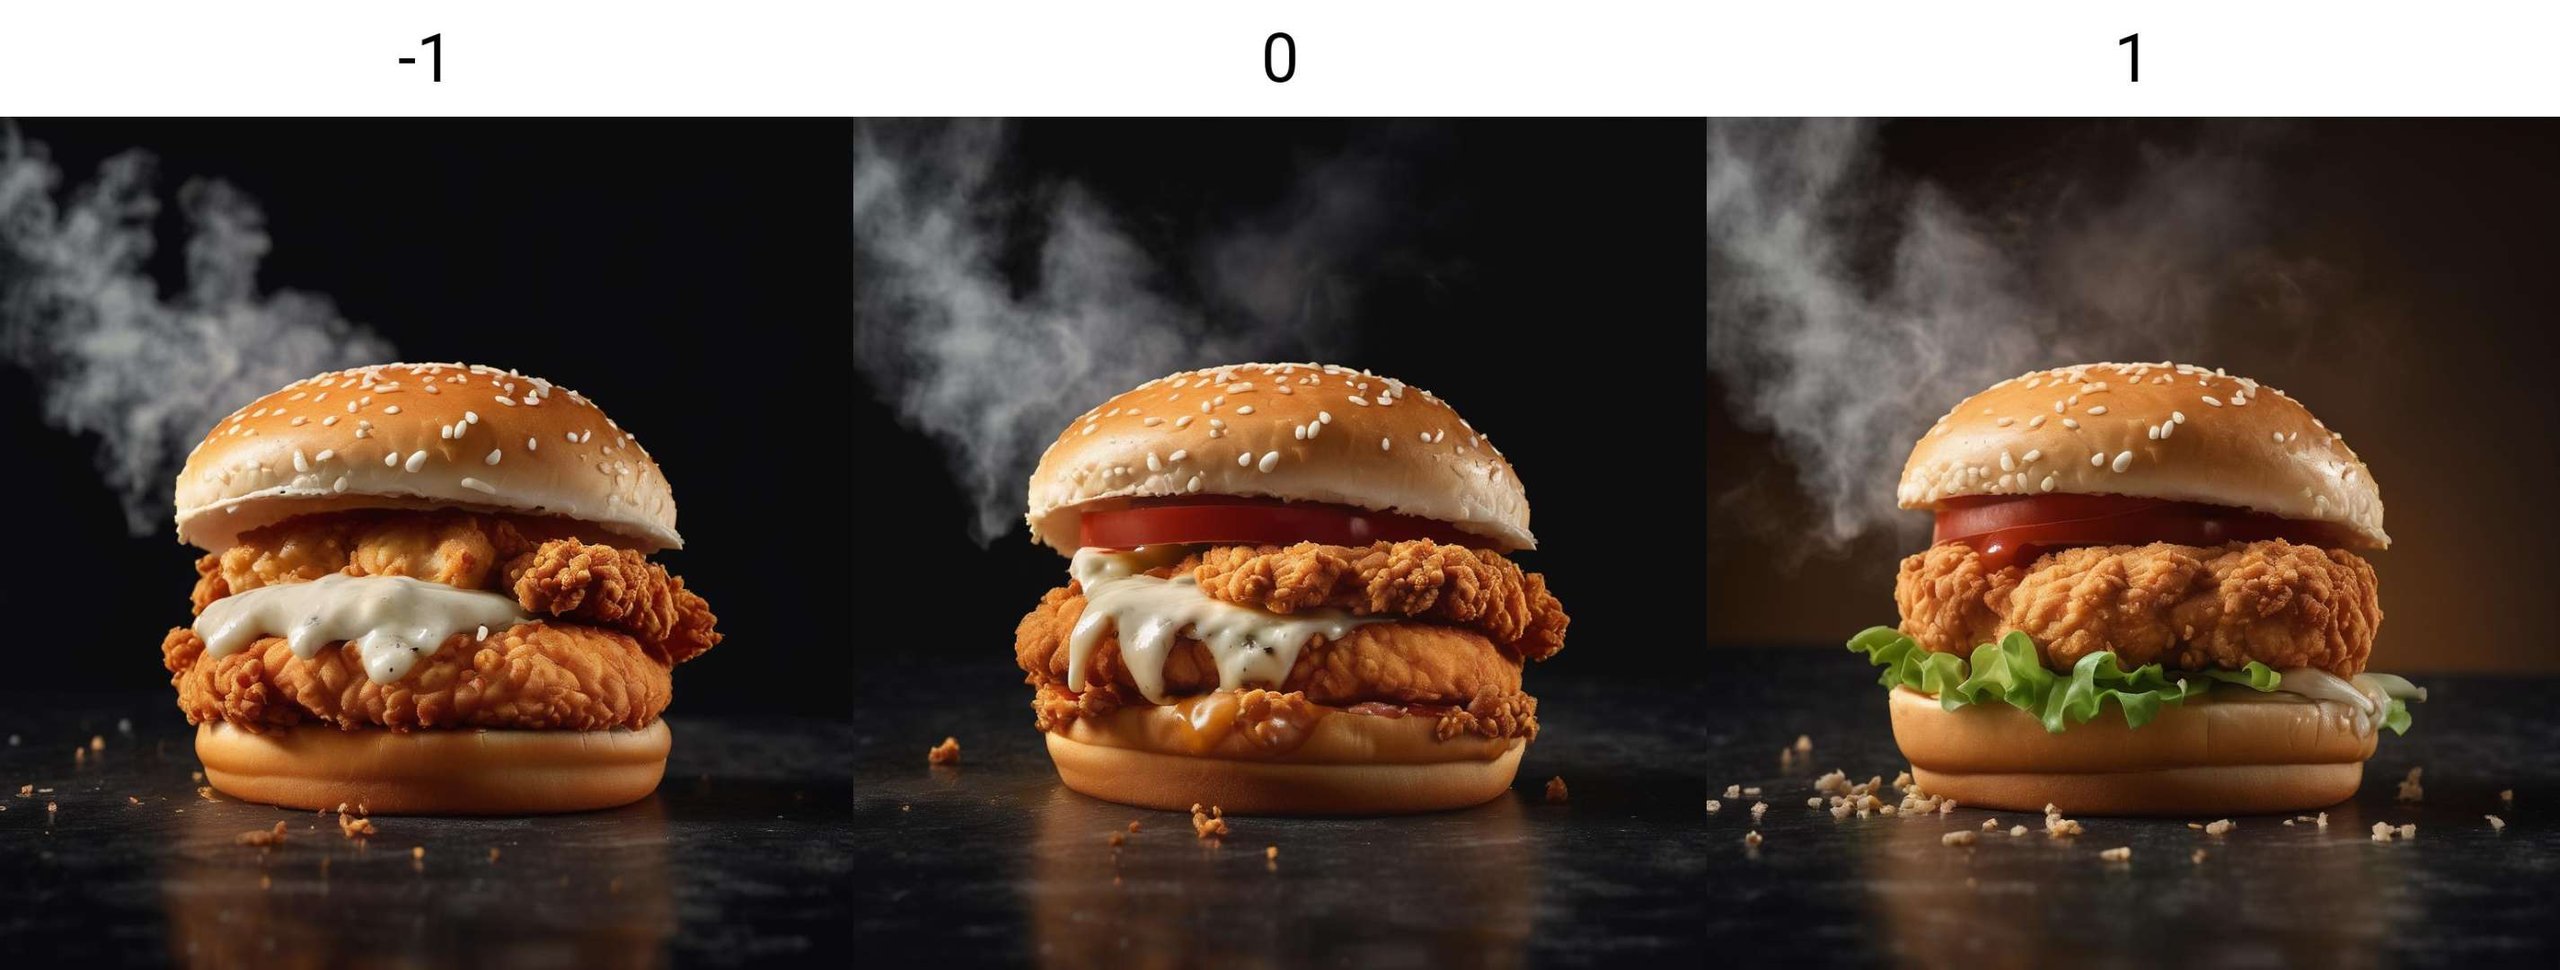 <lora:neg4all_xl_bdsqlsz_V5:-1>kfc chicken burger, dark background, quality photo, fried chicken, studio photo, steaming